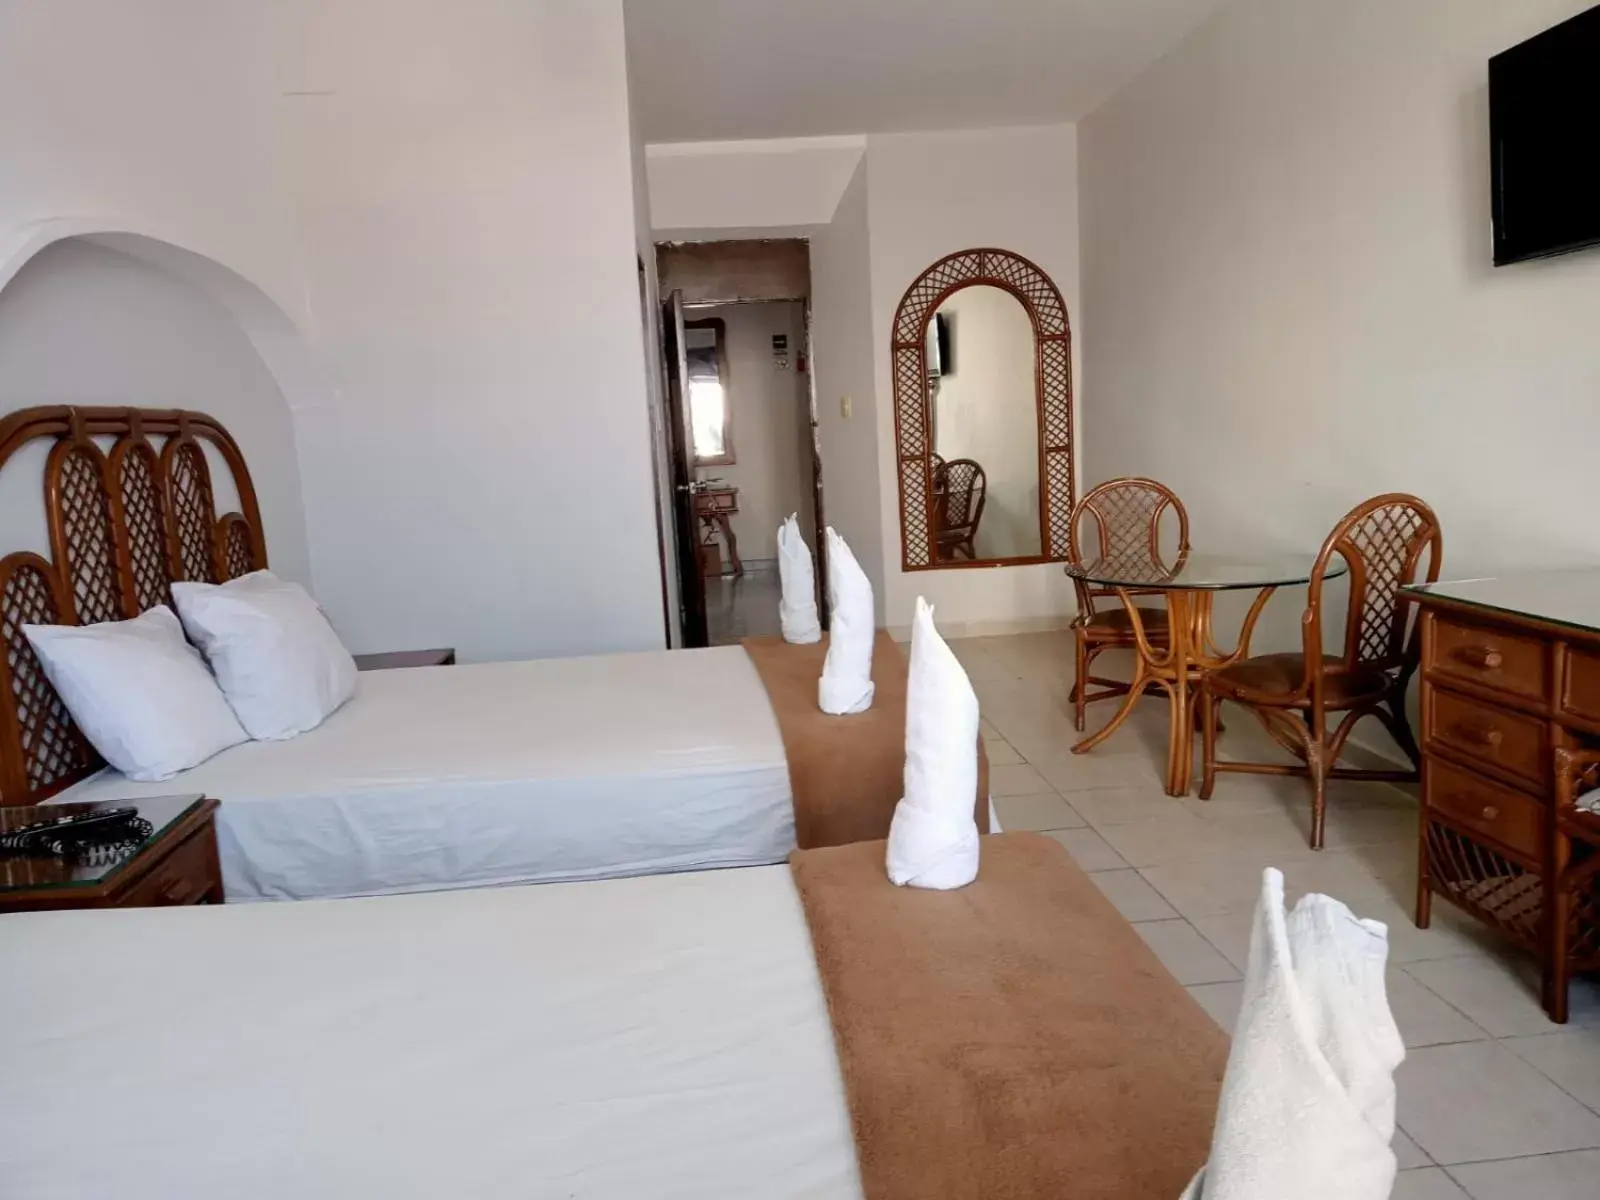 Bedroom in Hotel Santander Veracruz - Malecon